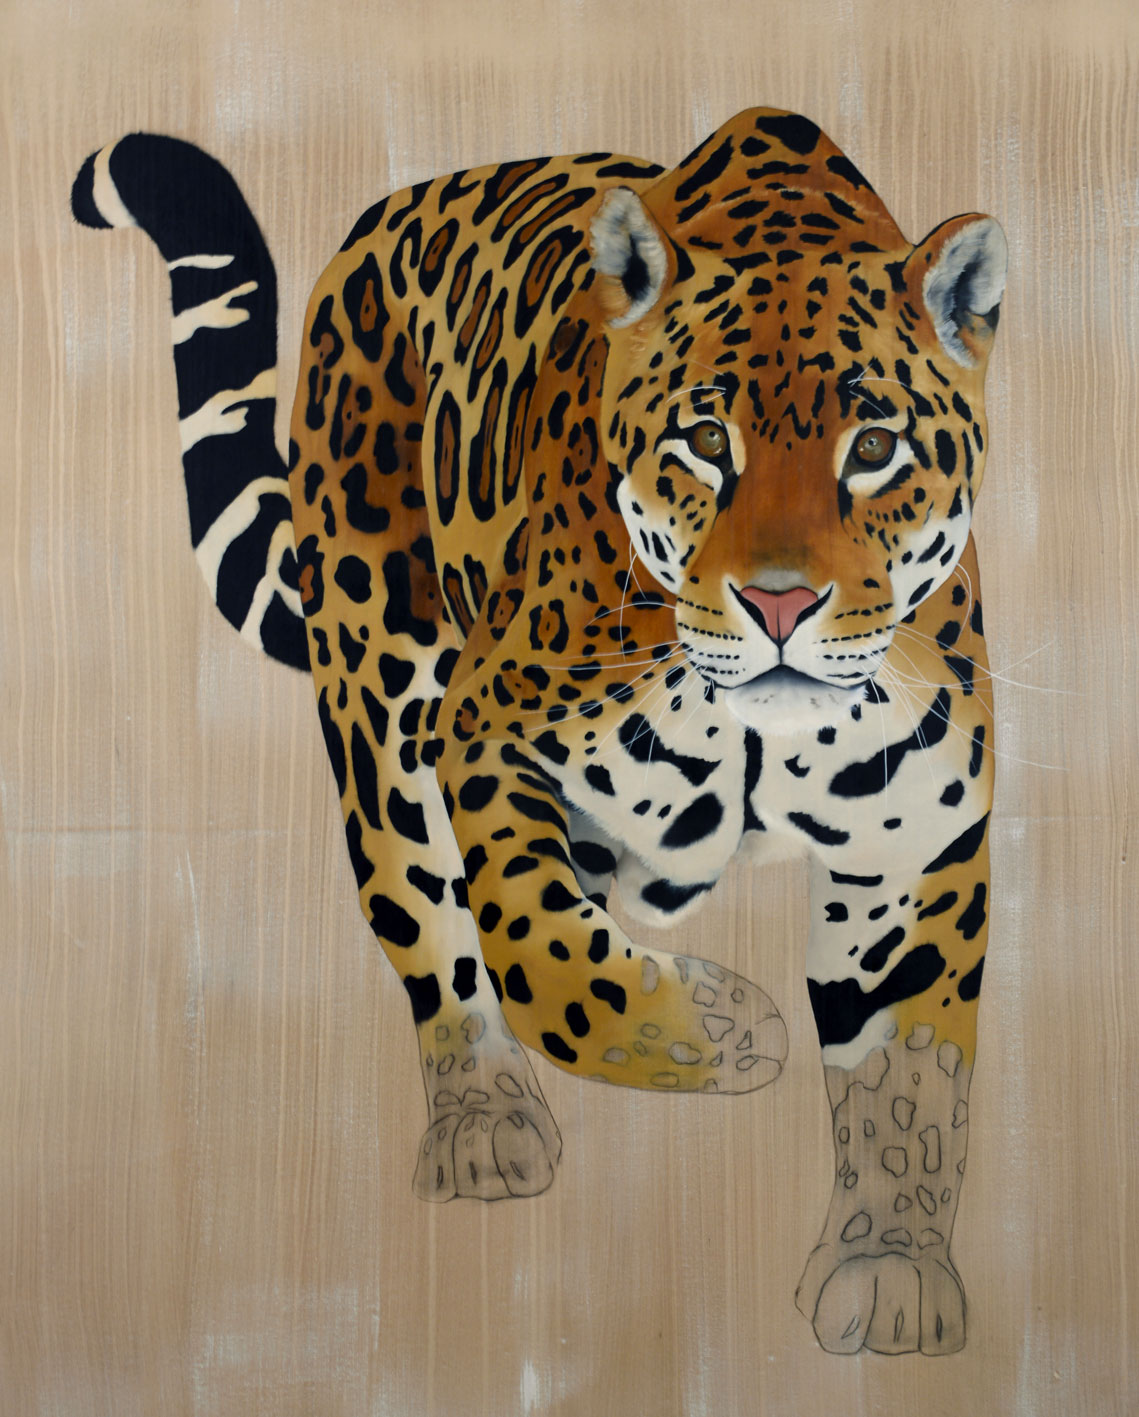 PANTHERA ONCA panthera-onca-jaguar-delete-extinction-protégé-disparition- Thierry Bisch artiste peintre contemporain animaux tableau art décoration biodiversité conservation 